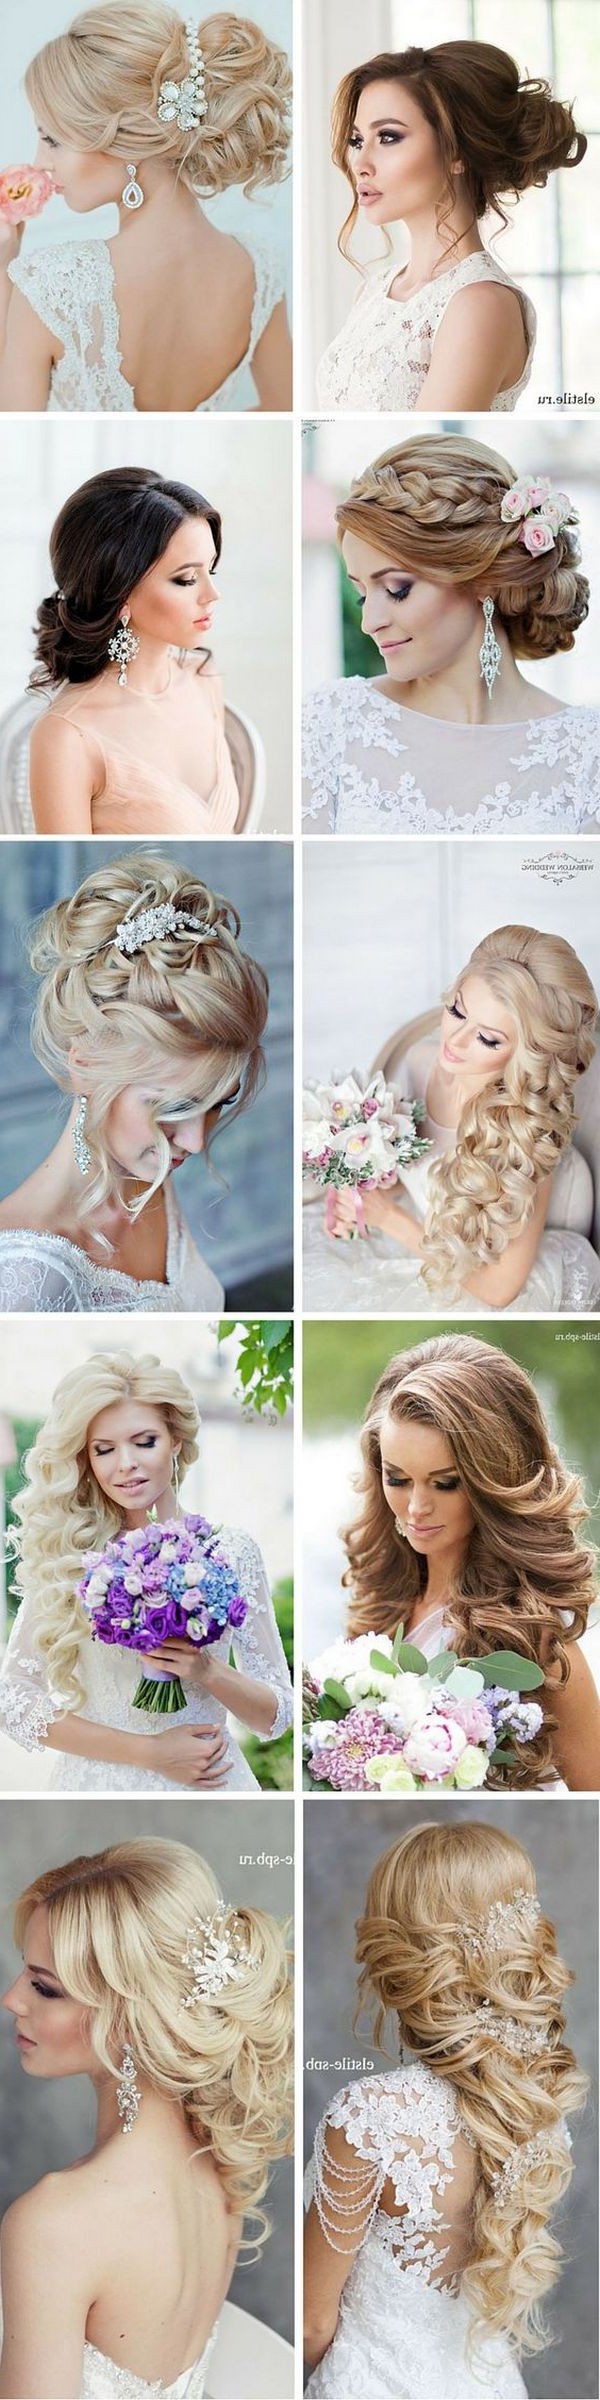 Stunning Summer Wedding Hairstyles